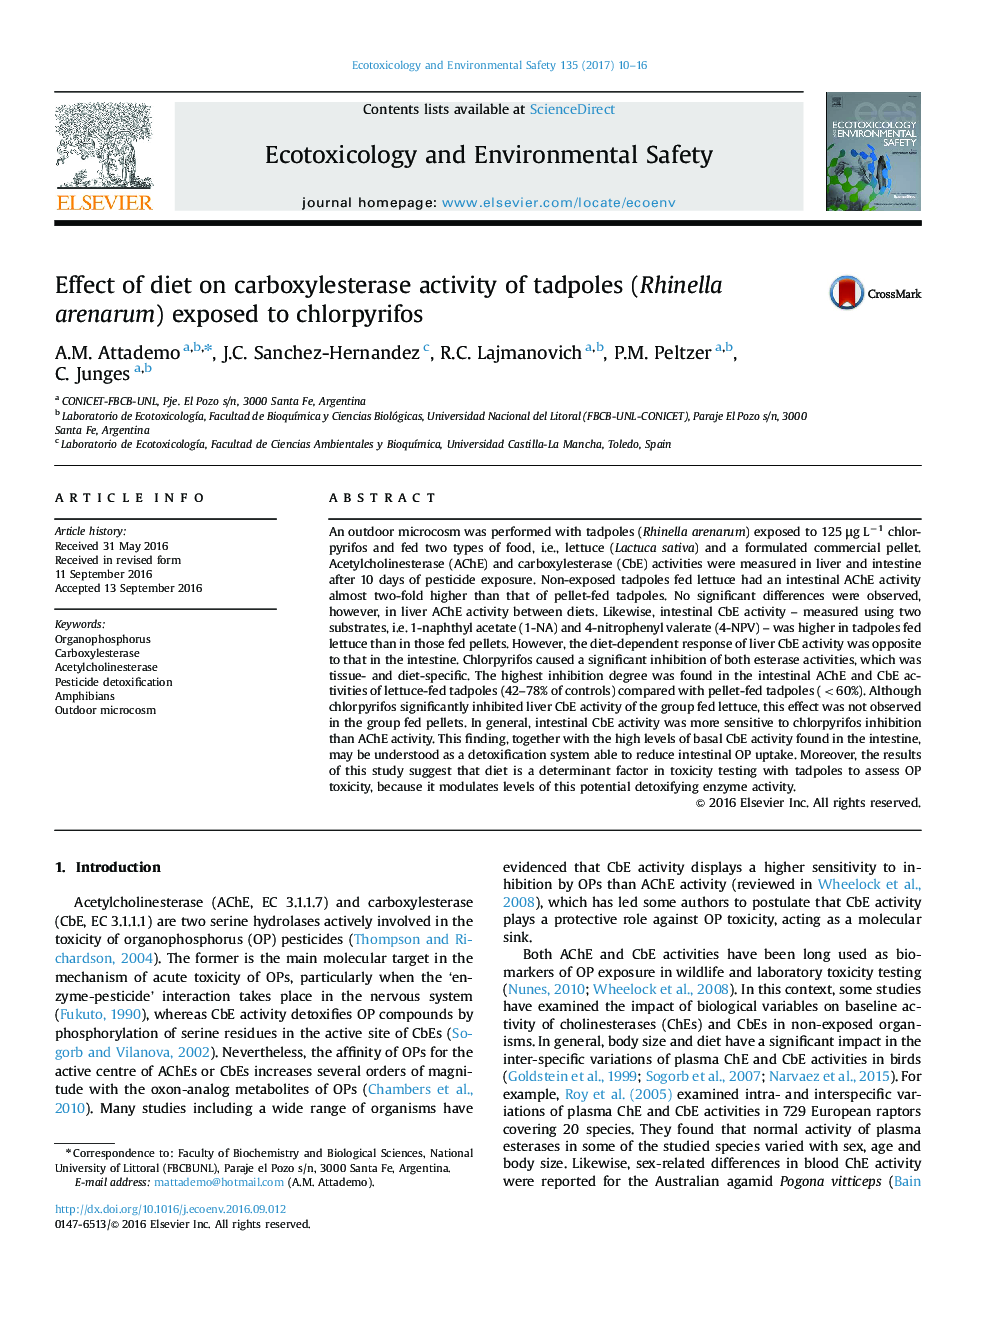 تاثیر رژیم غذایی بر فعالیت carboxylesterase بچه قورباغه (Rhinella arenarum) در معرض کلرپیریفوس